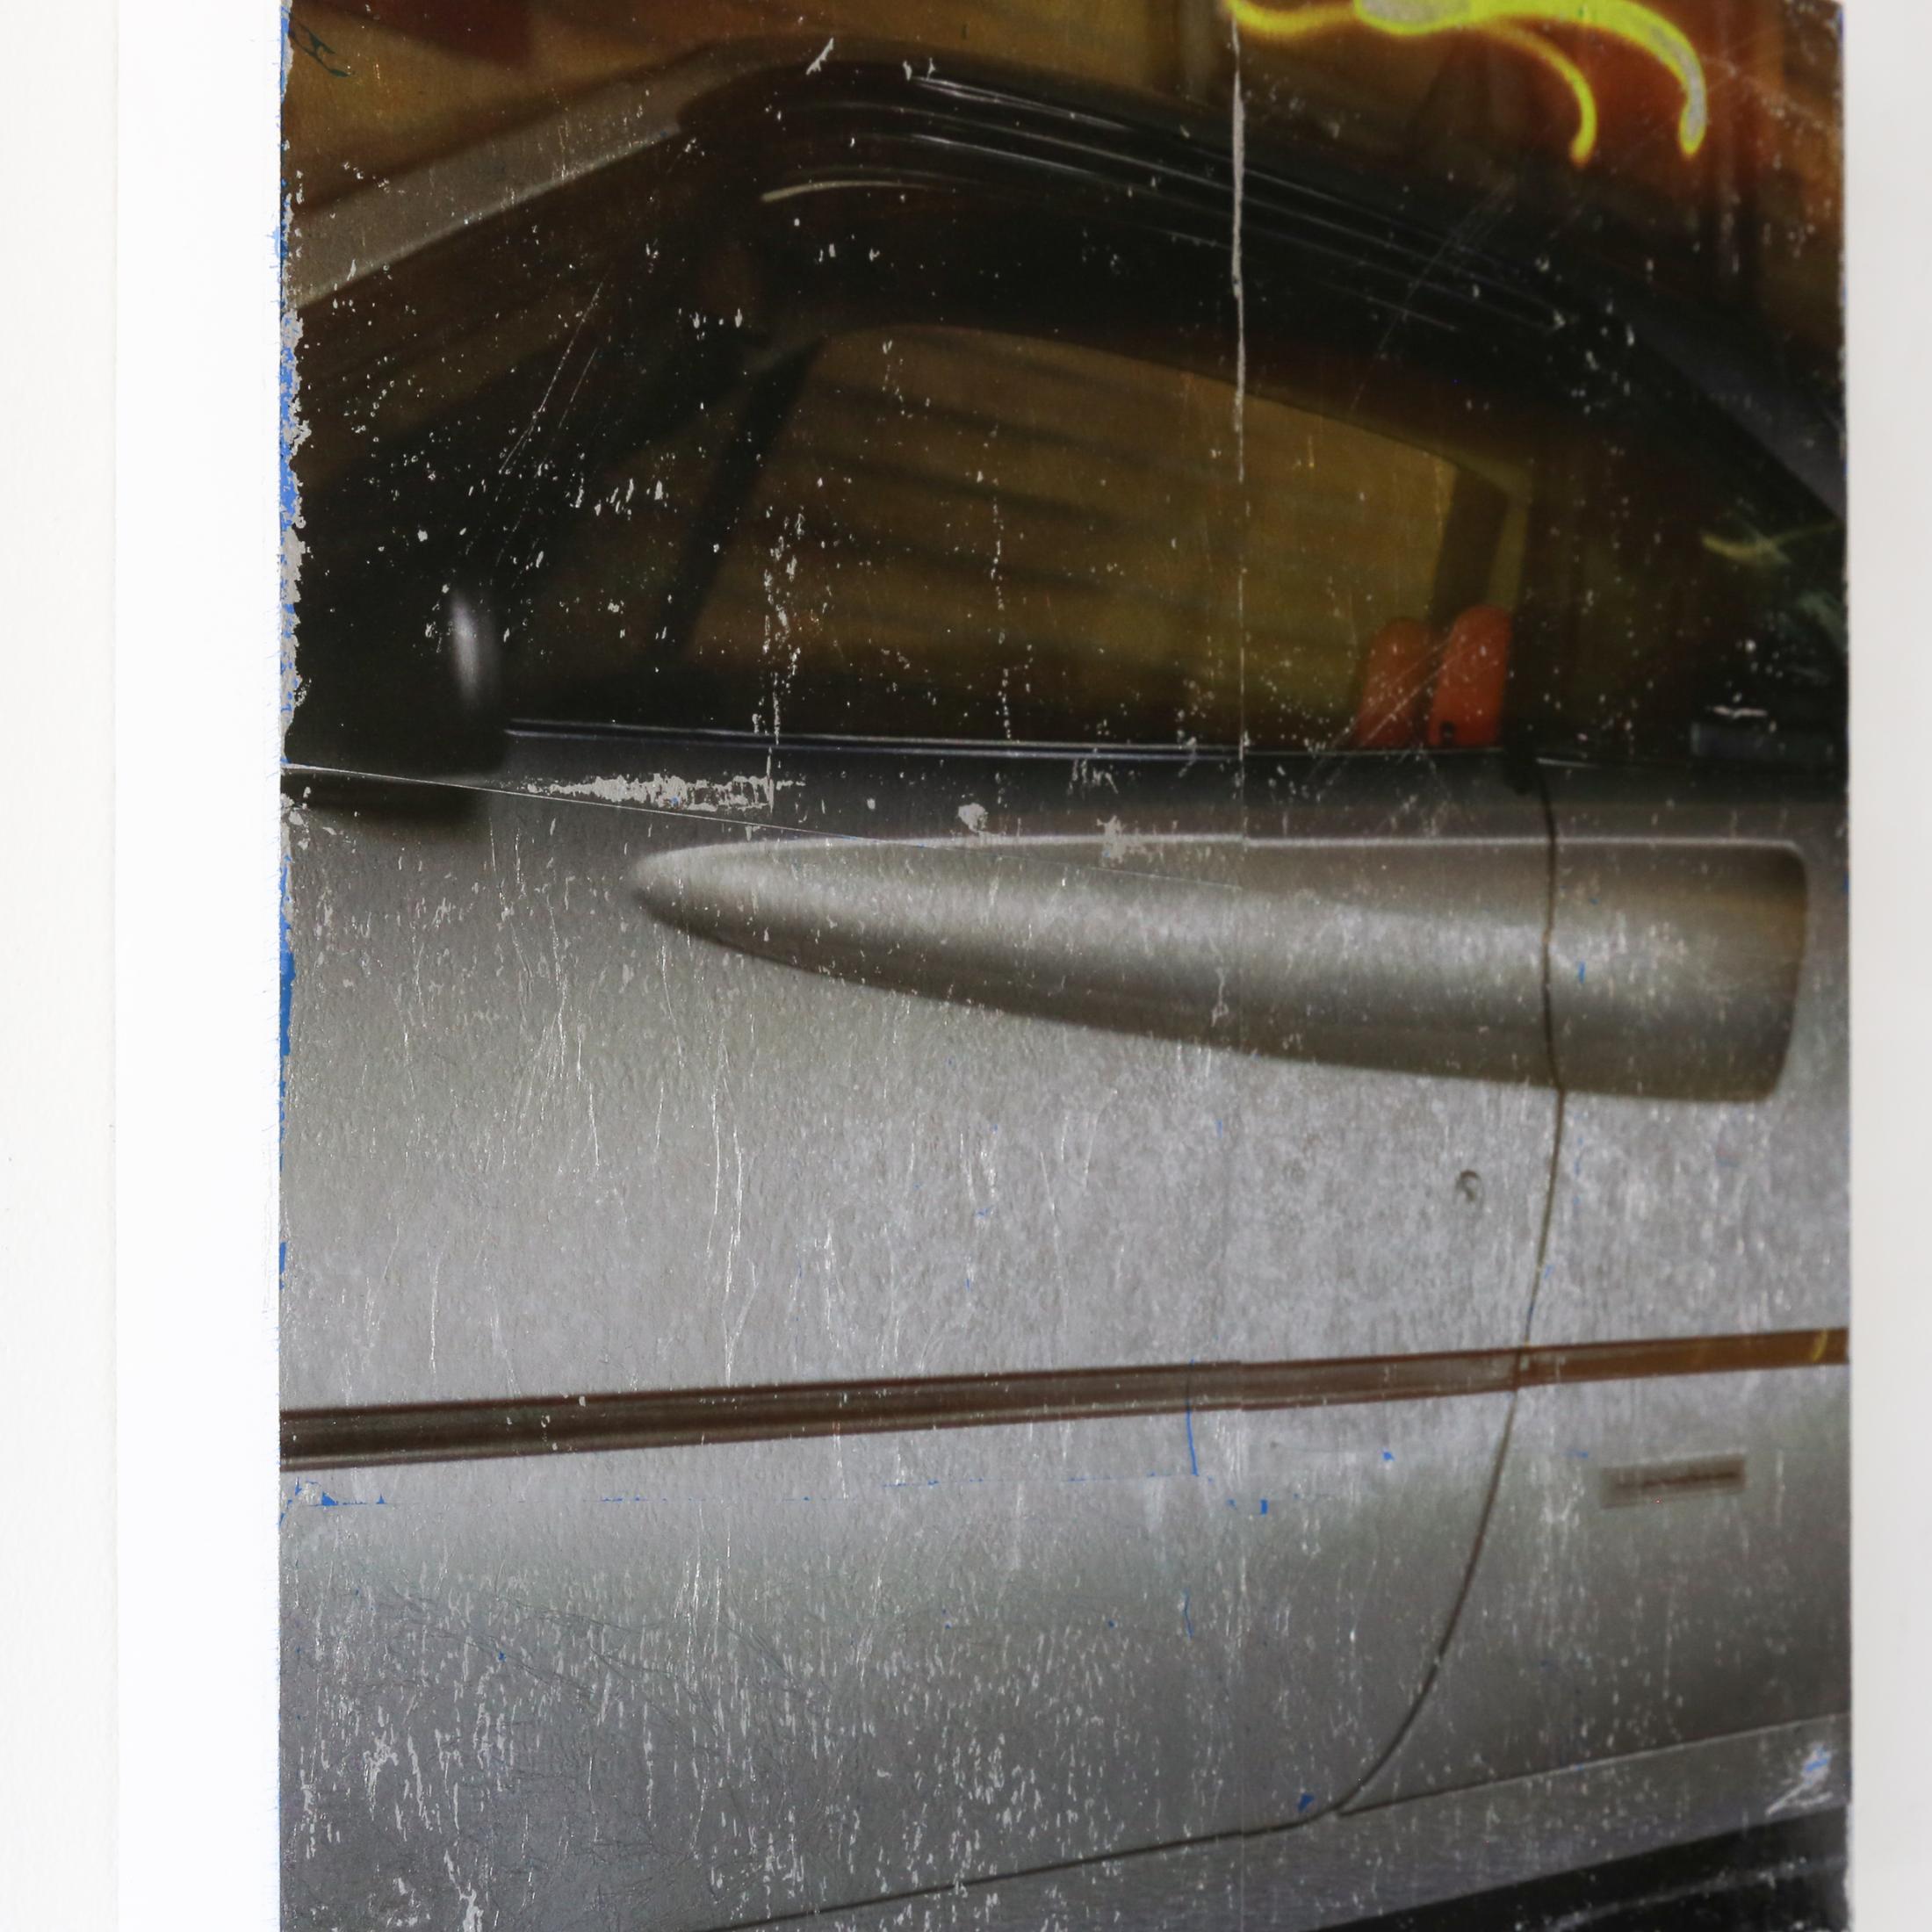 MARK JACKSON
Kayro Sechs
- • auf der Tafel
 Schwarz, Luxus, Popkultur
20.00w x 20.00h x 2.00d in
$800.00